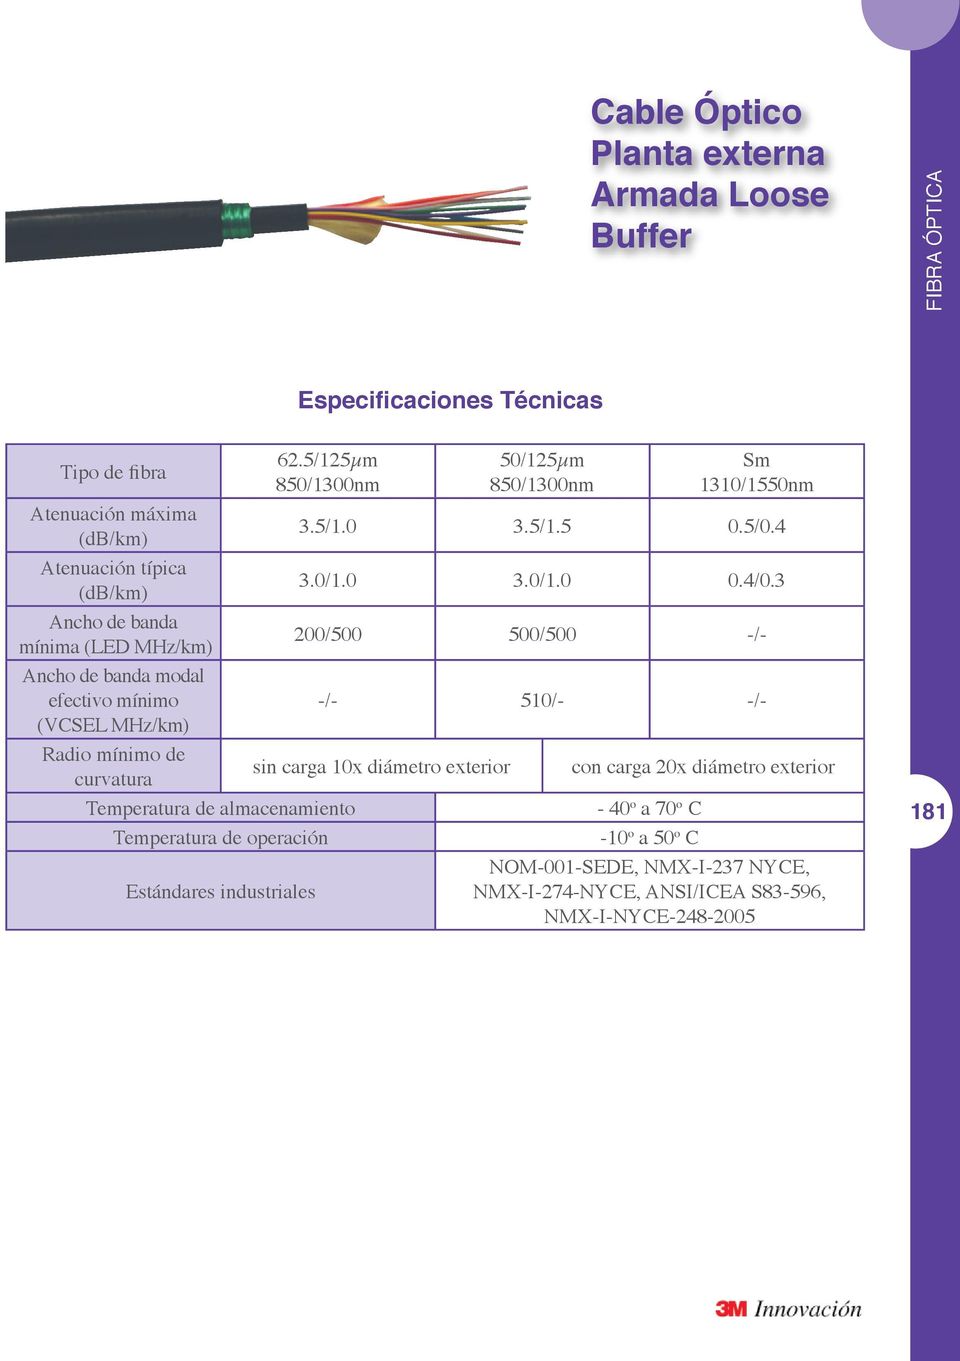 3 Ancho de banda mínima (LED MHz/km) 200/500 500/500 -/- Ancho de banda modal efectivo mínimo -/- 510/- -/- (VCSEL MHz/km) Radio mínimo de curvatura sin carga 10x